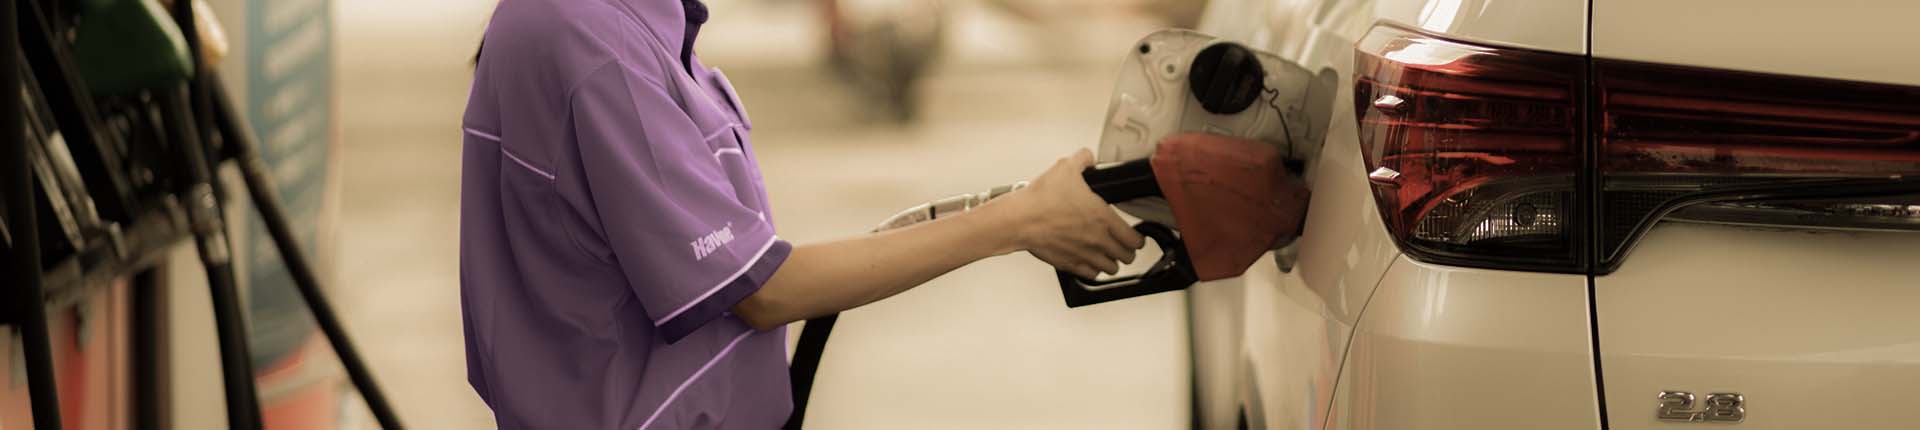 5 dicas para fidelizar o cliente do posto de combustível